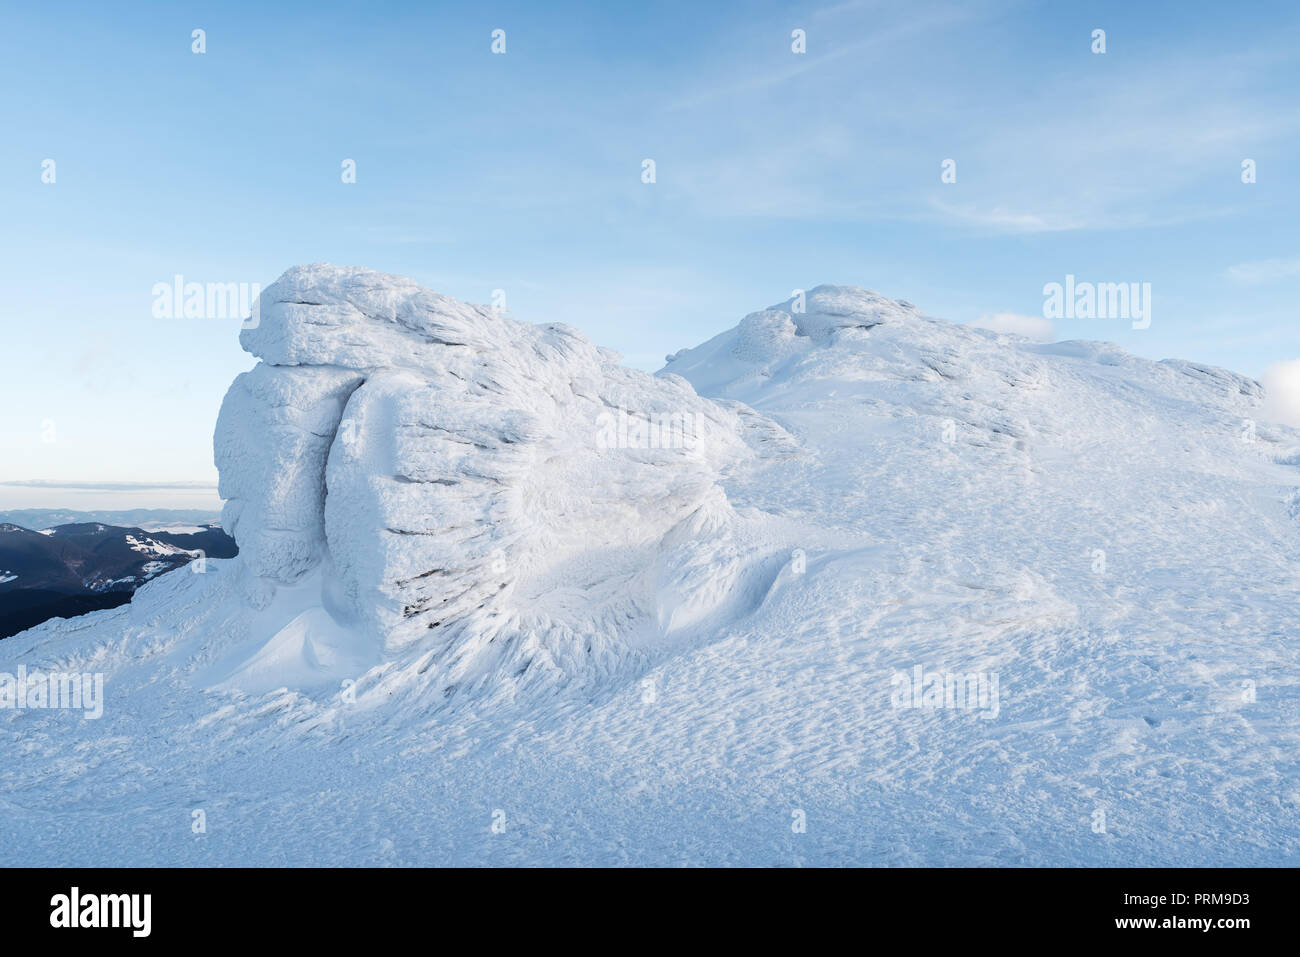 Winter Landschaft mit Felsen in den Bergen. Schönen Schnee und Neve auf den Steinen. Das Licht der untergehenden Sonne. Karpaten, Ukraine, Europa Stockfoto